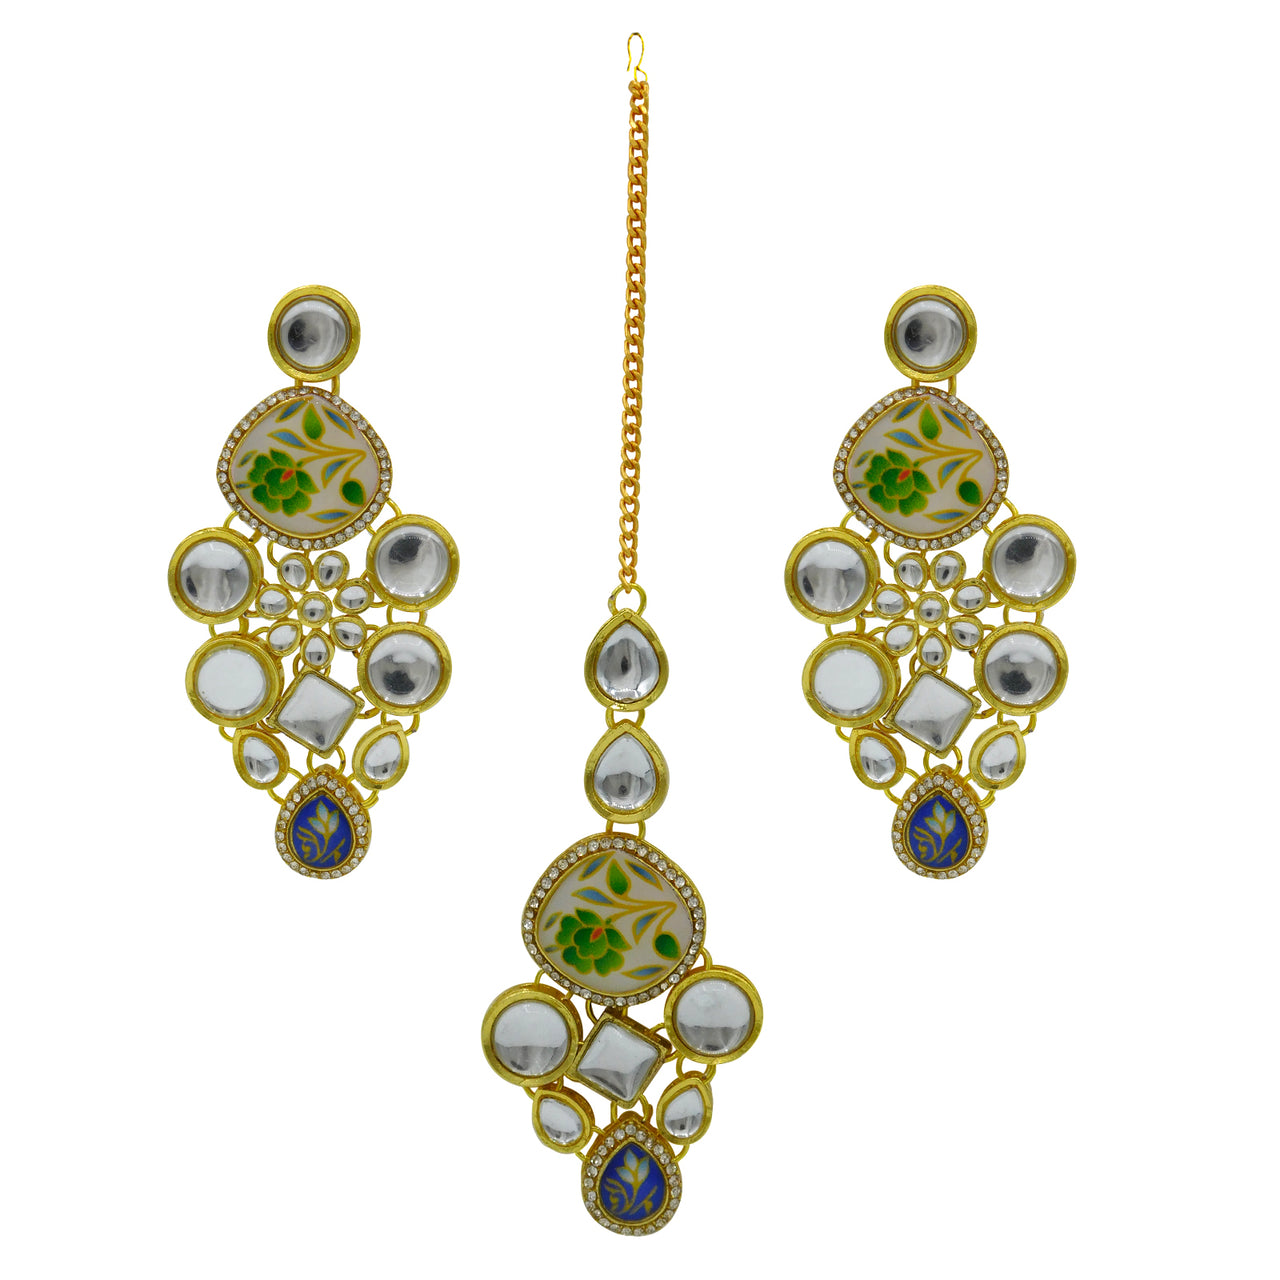 Sujwel Gold Plated Kundan Design Choker Necklace Set For Women (08-0455) - Sujwel